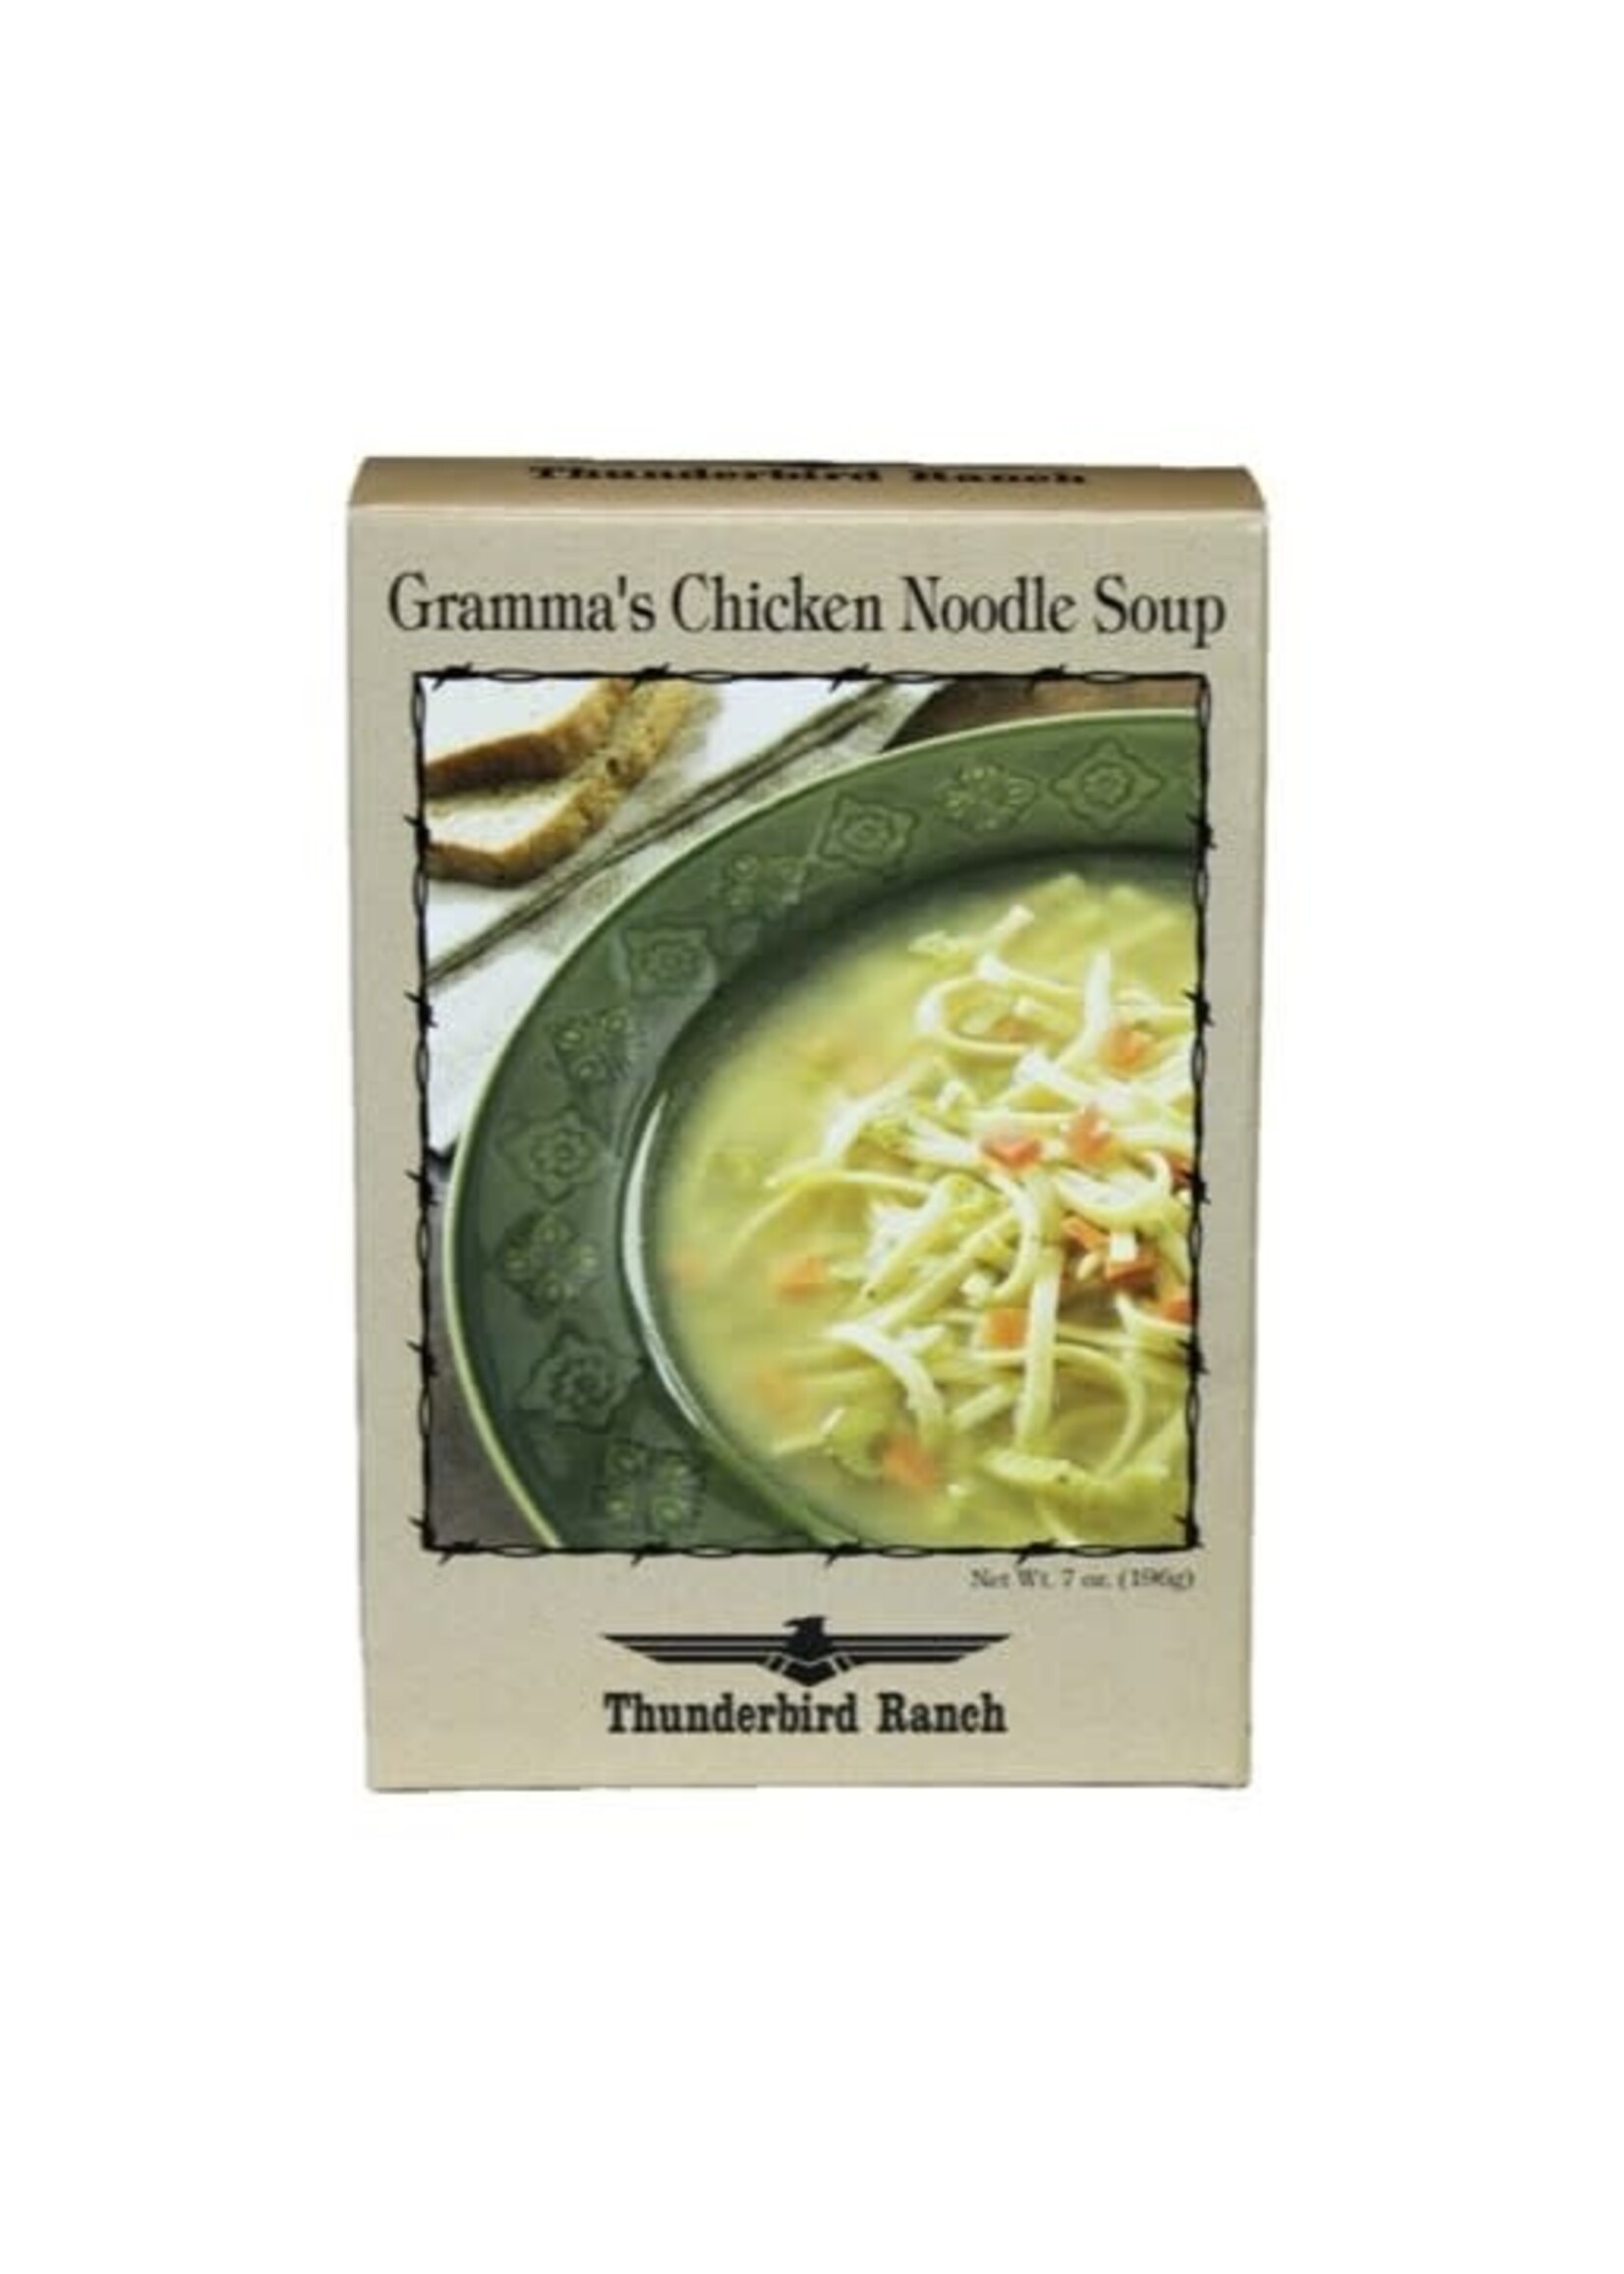 Gramma's Chicken Noodle Soup Mix 7oz